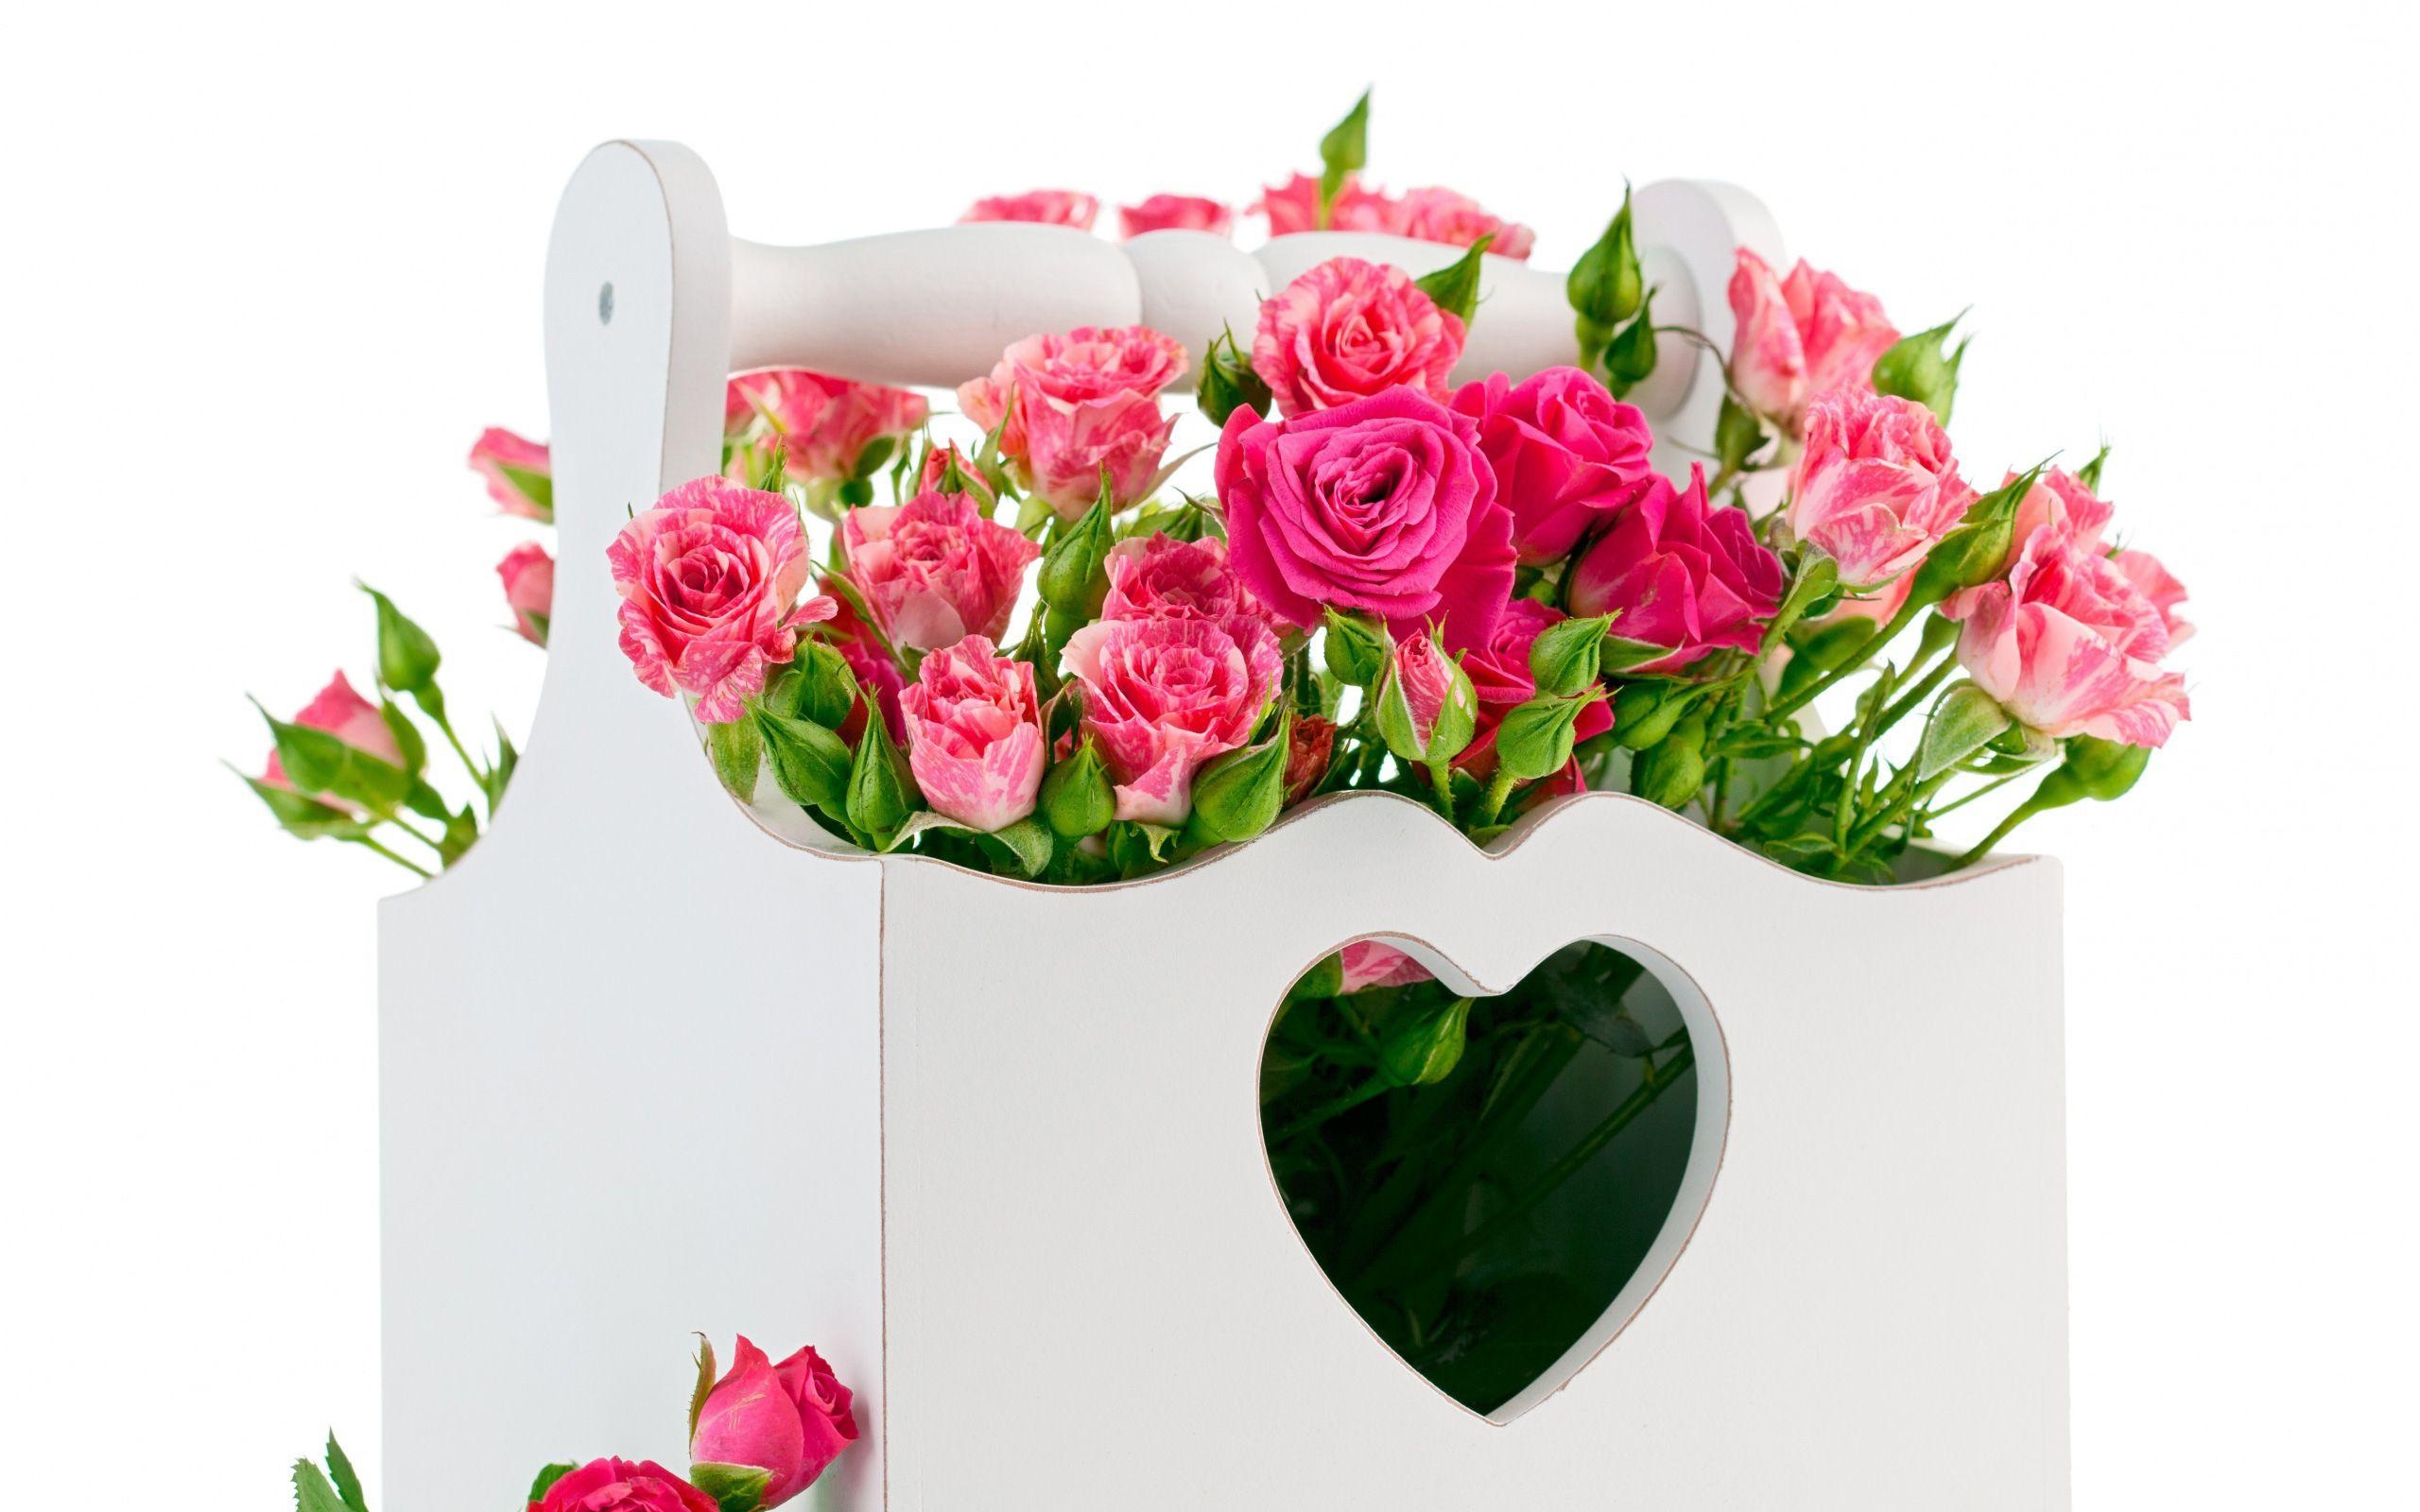 Hearts and Flowers, Romantic bouquet, Nature's beauty, Springtime bliss, 2560x1600 HD Desktop